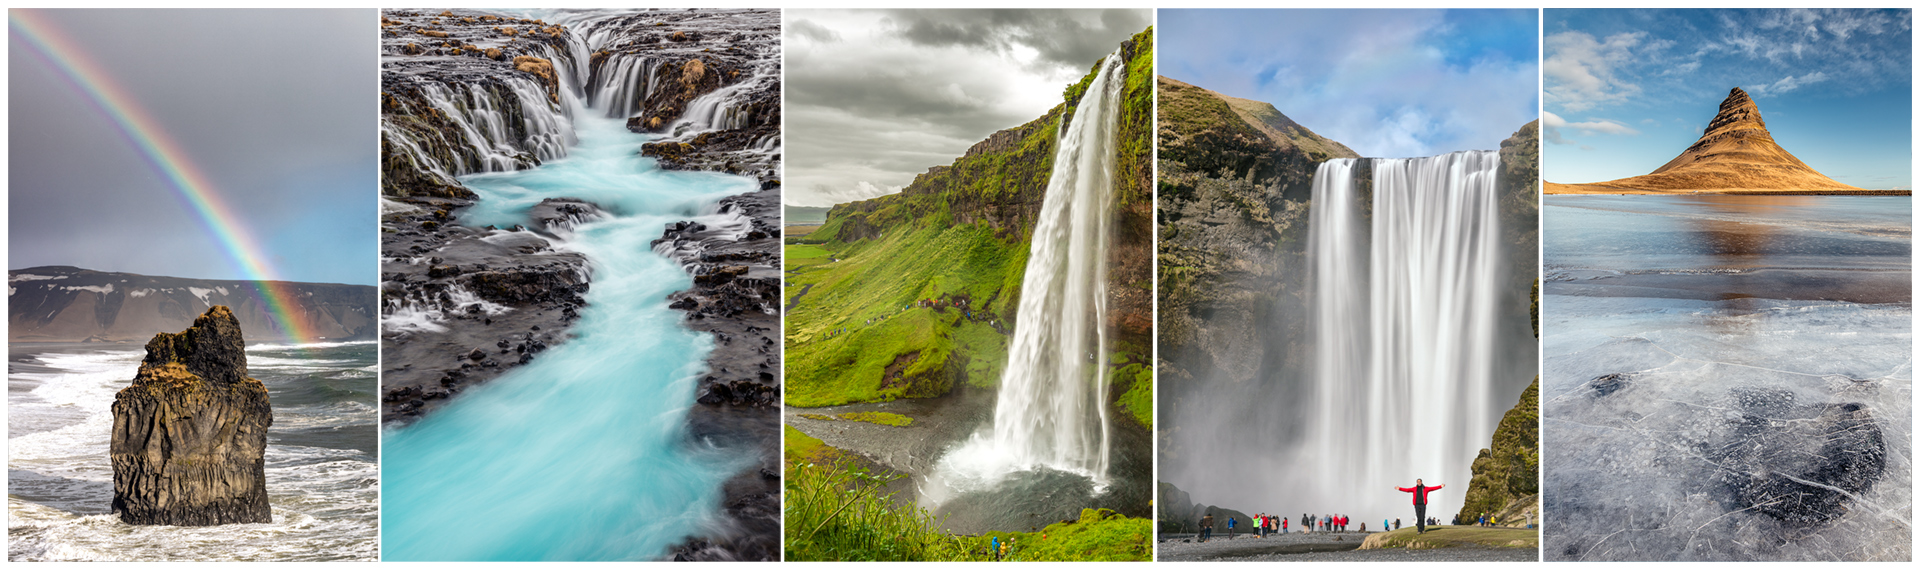 Storie di luoghi lontani  vertiali-unite3b Perché andare proprio in Islanda?